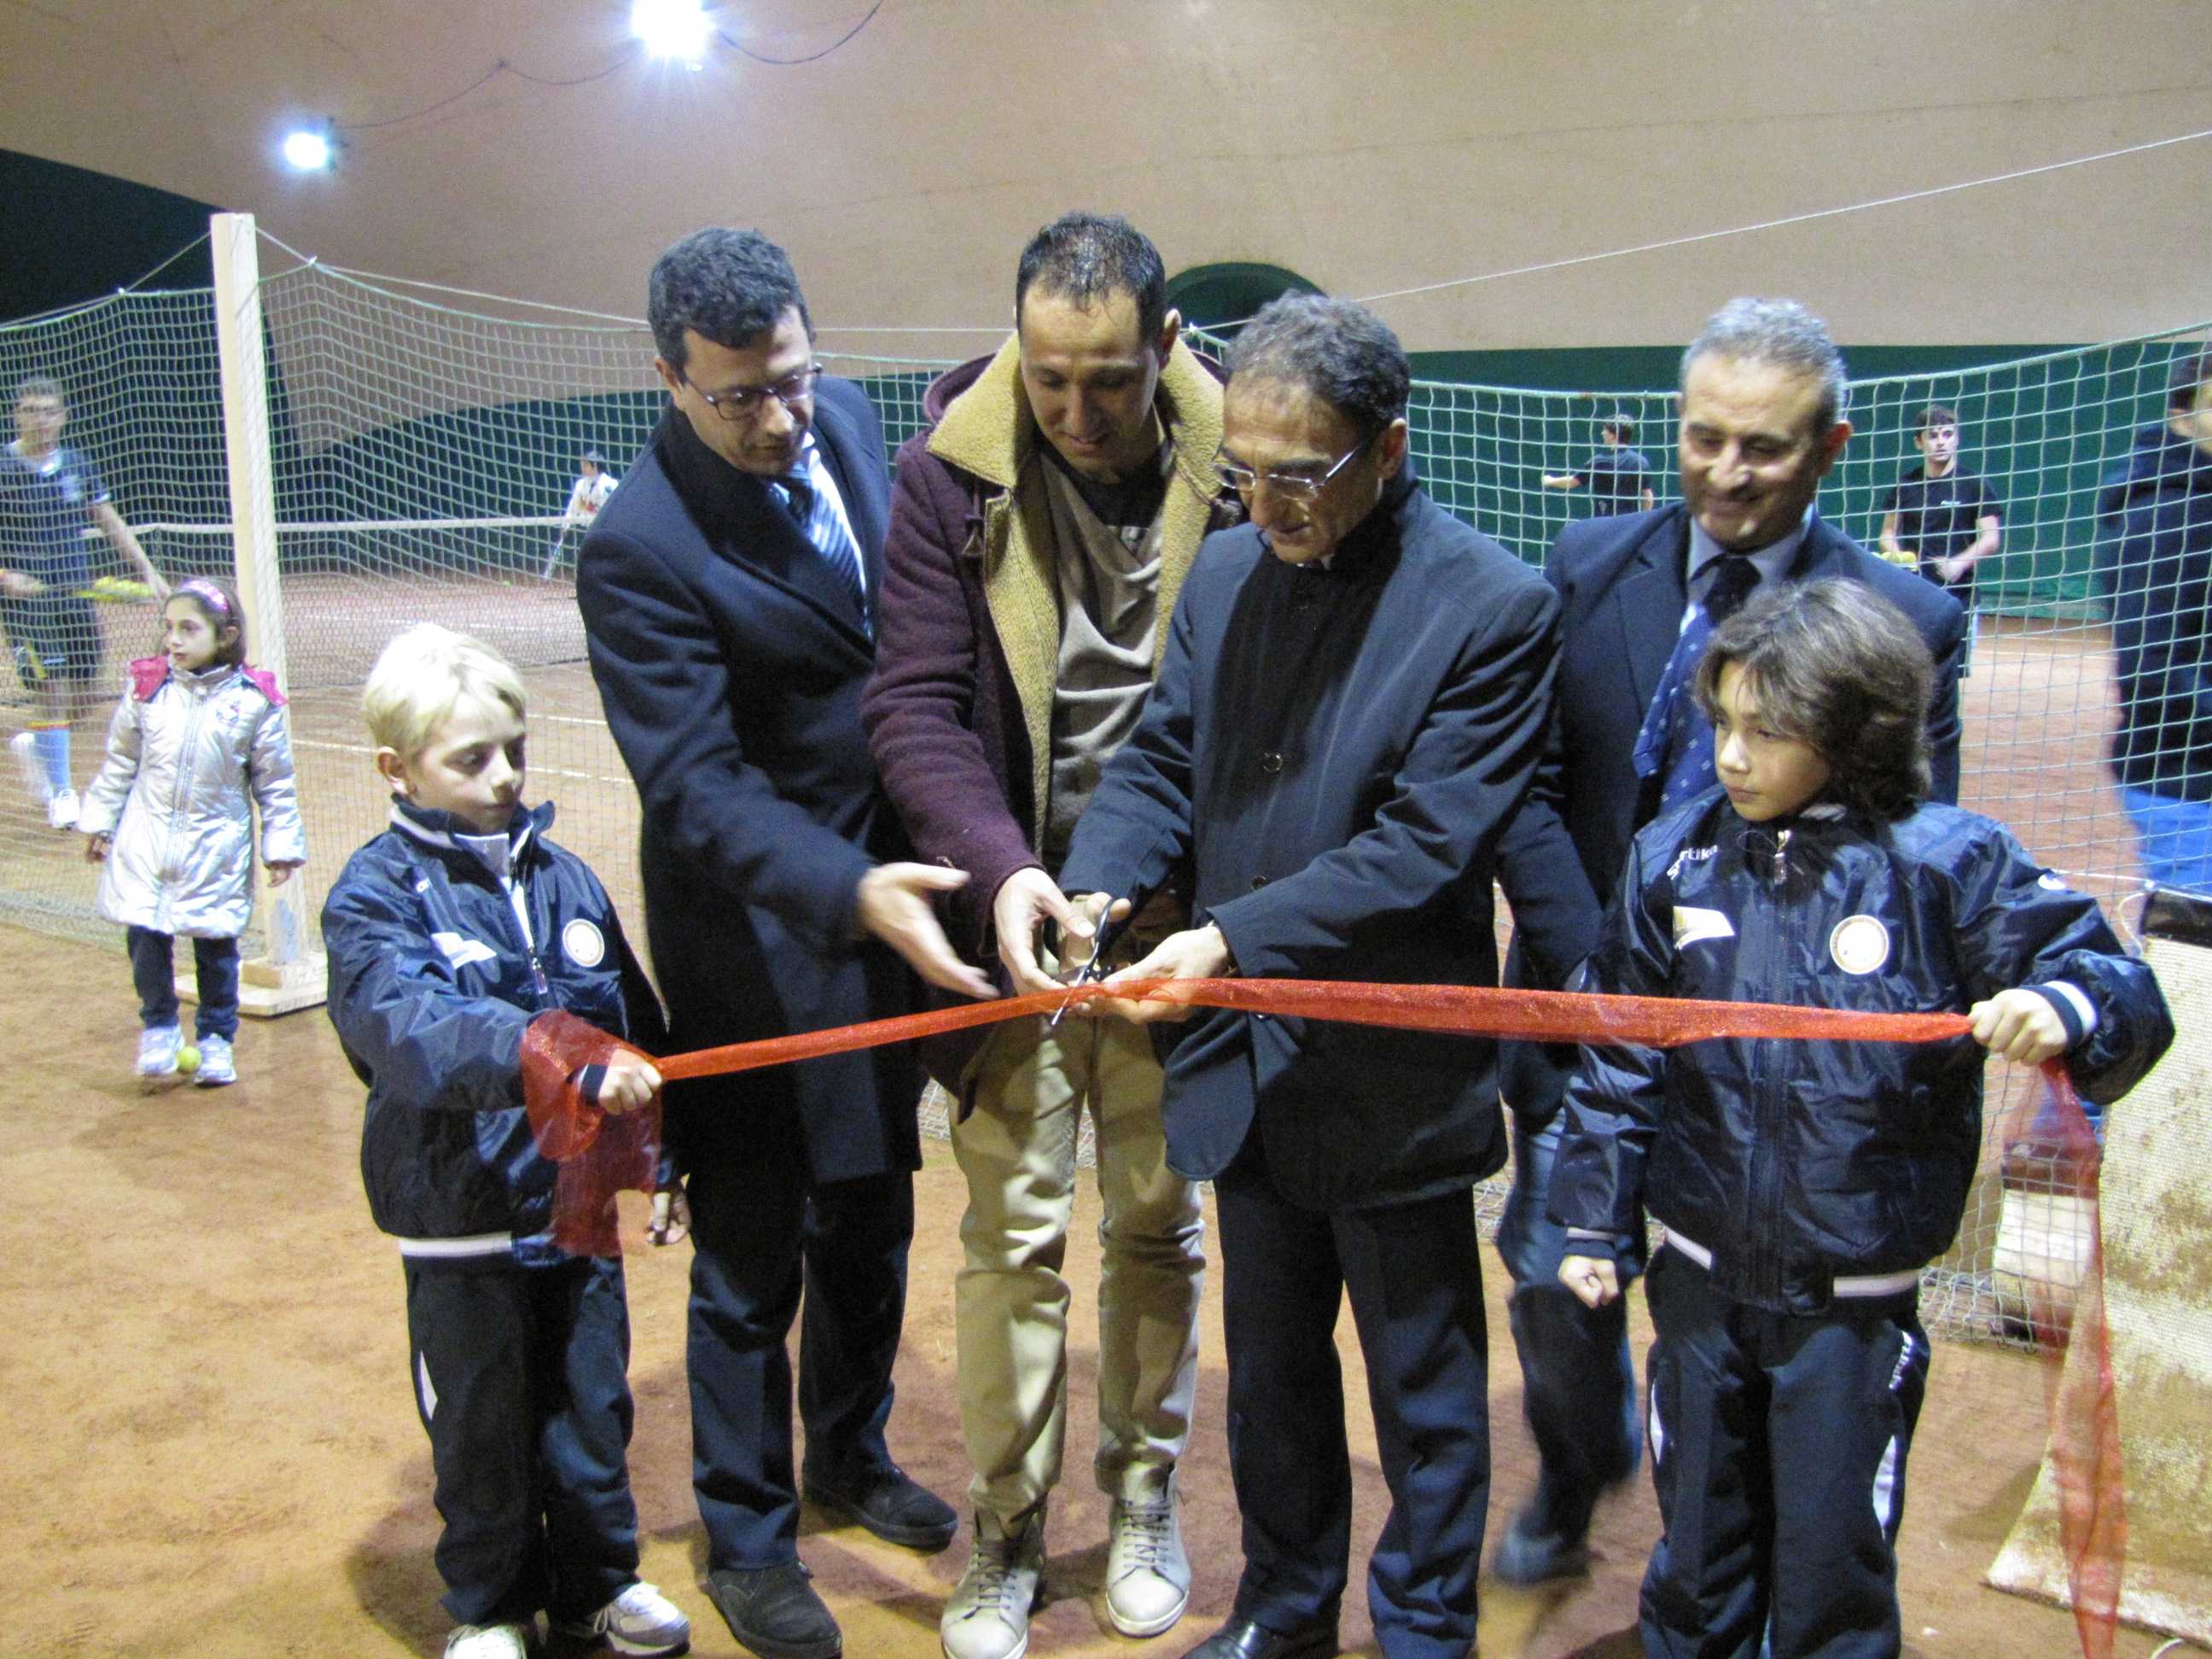 Inaugurati i campi da tennis al coperto a Pontepiccolo